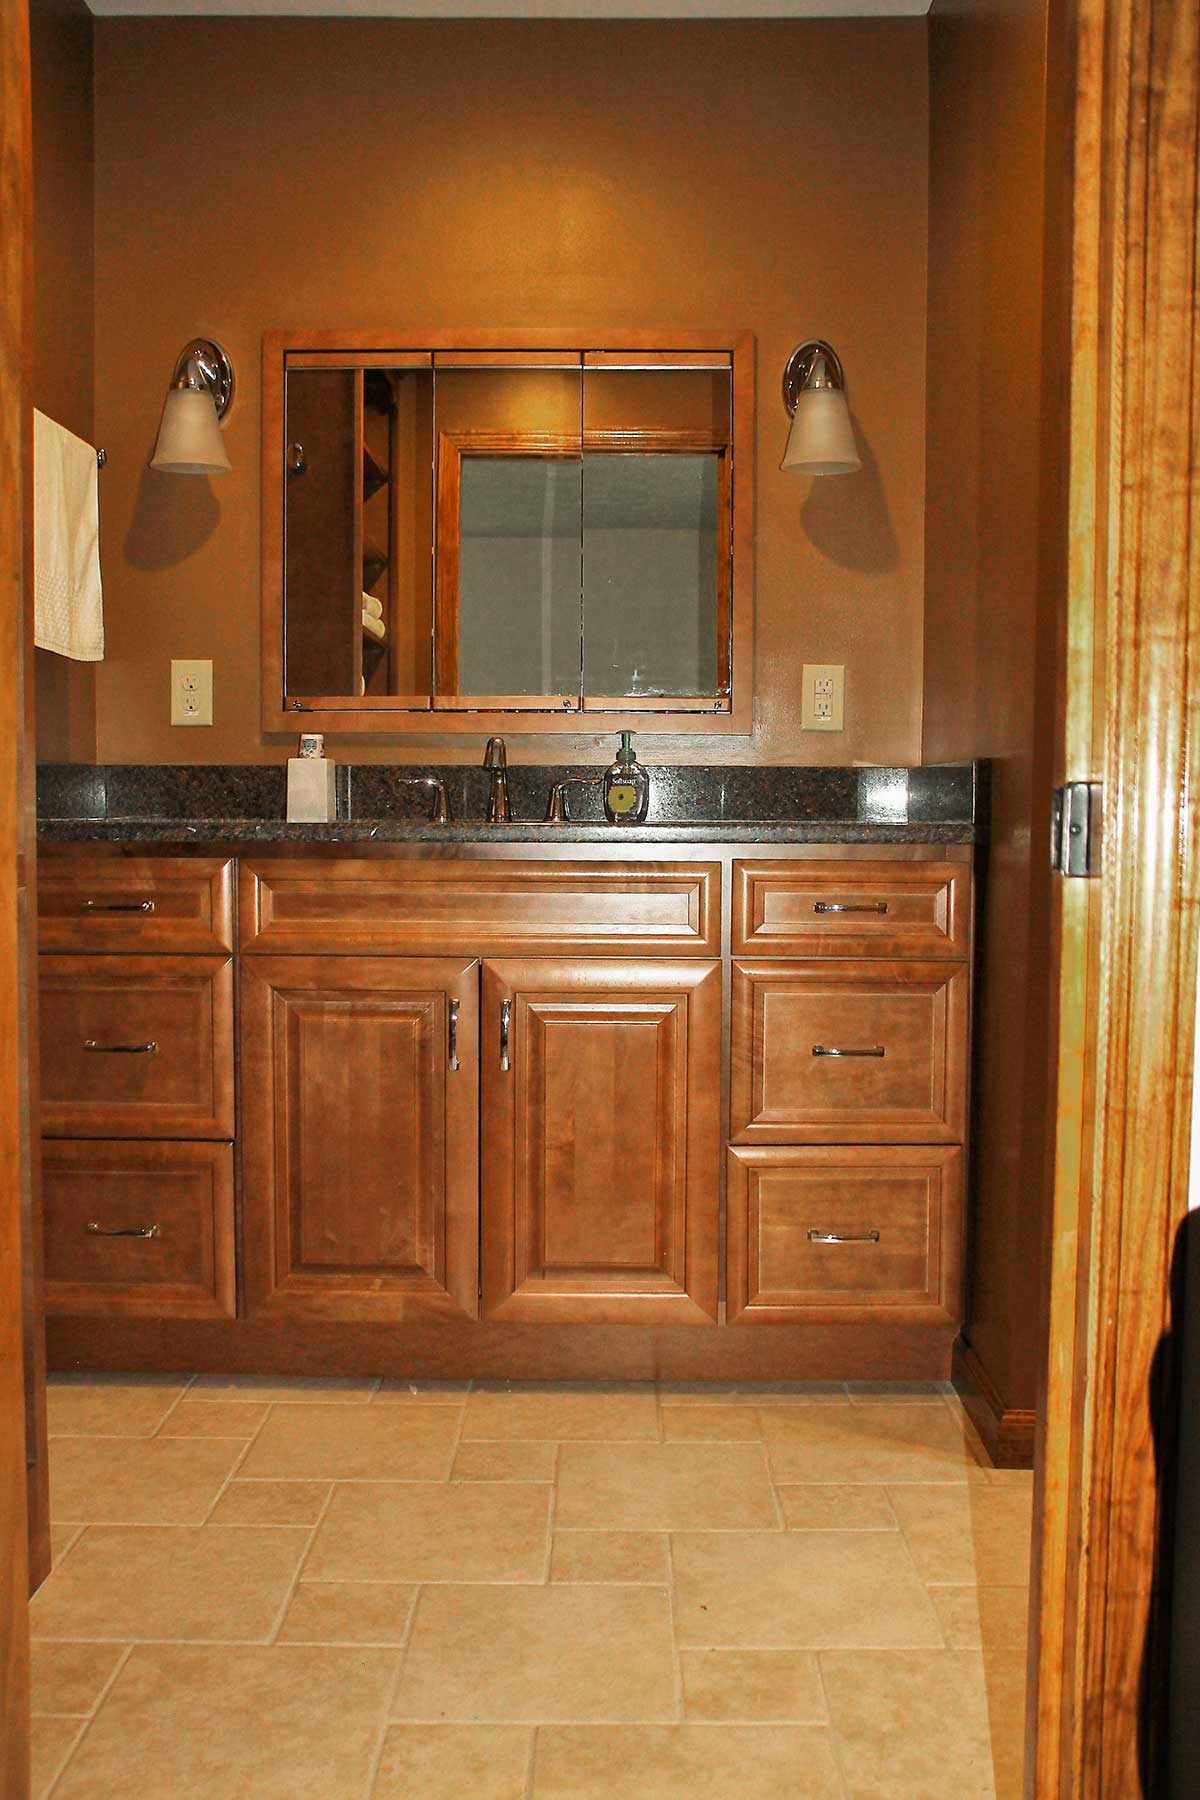 View of bathroom vanity